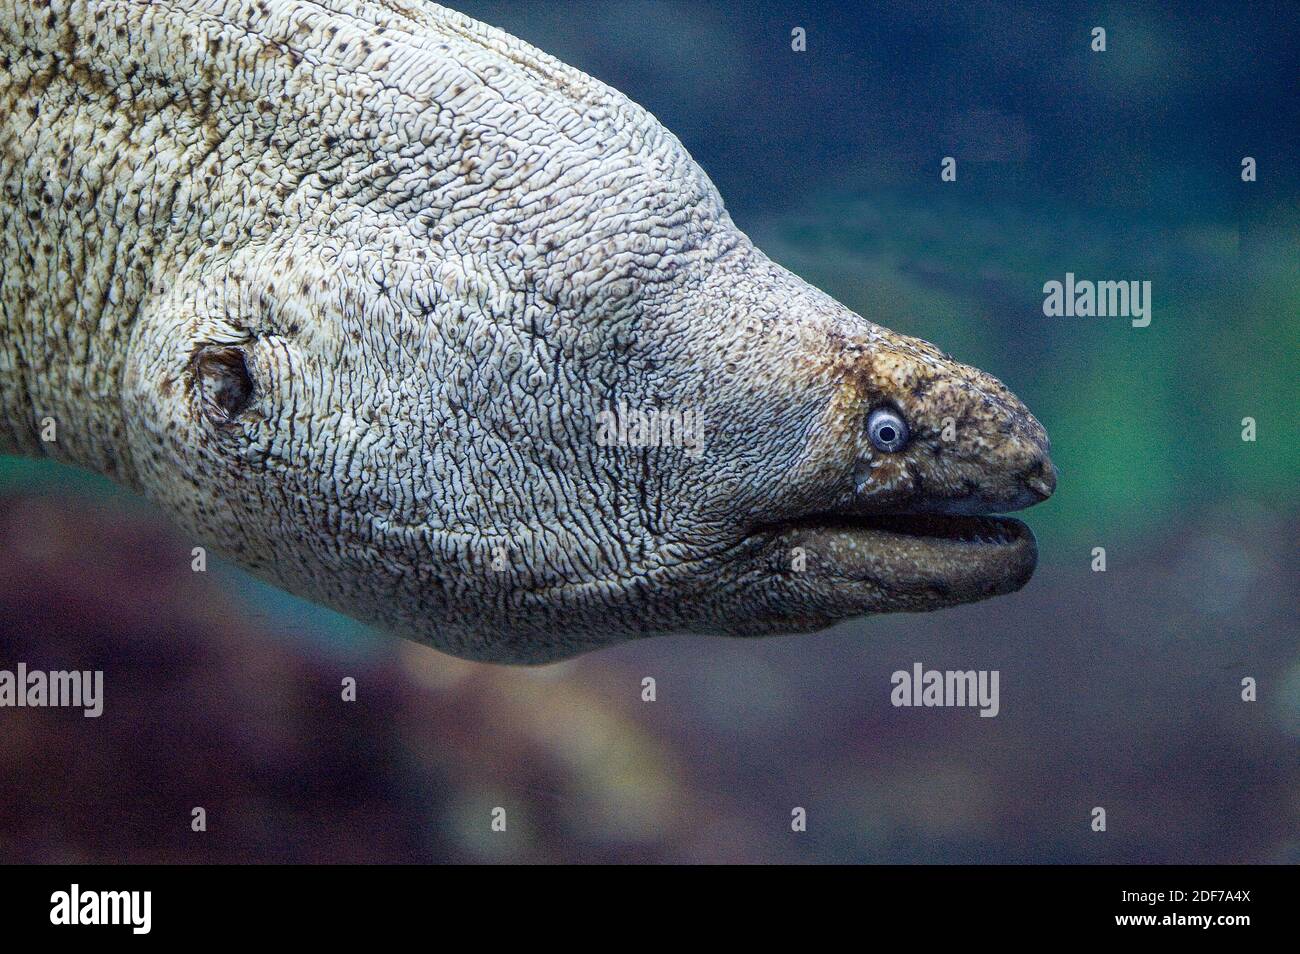 La morena mediterranea (Muraena helena) è un pesce marino originario del Mar Mediterraneo e dell'Oceano Atlantico orientale. Dettaglio della testa. Foto Stock